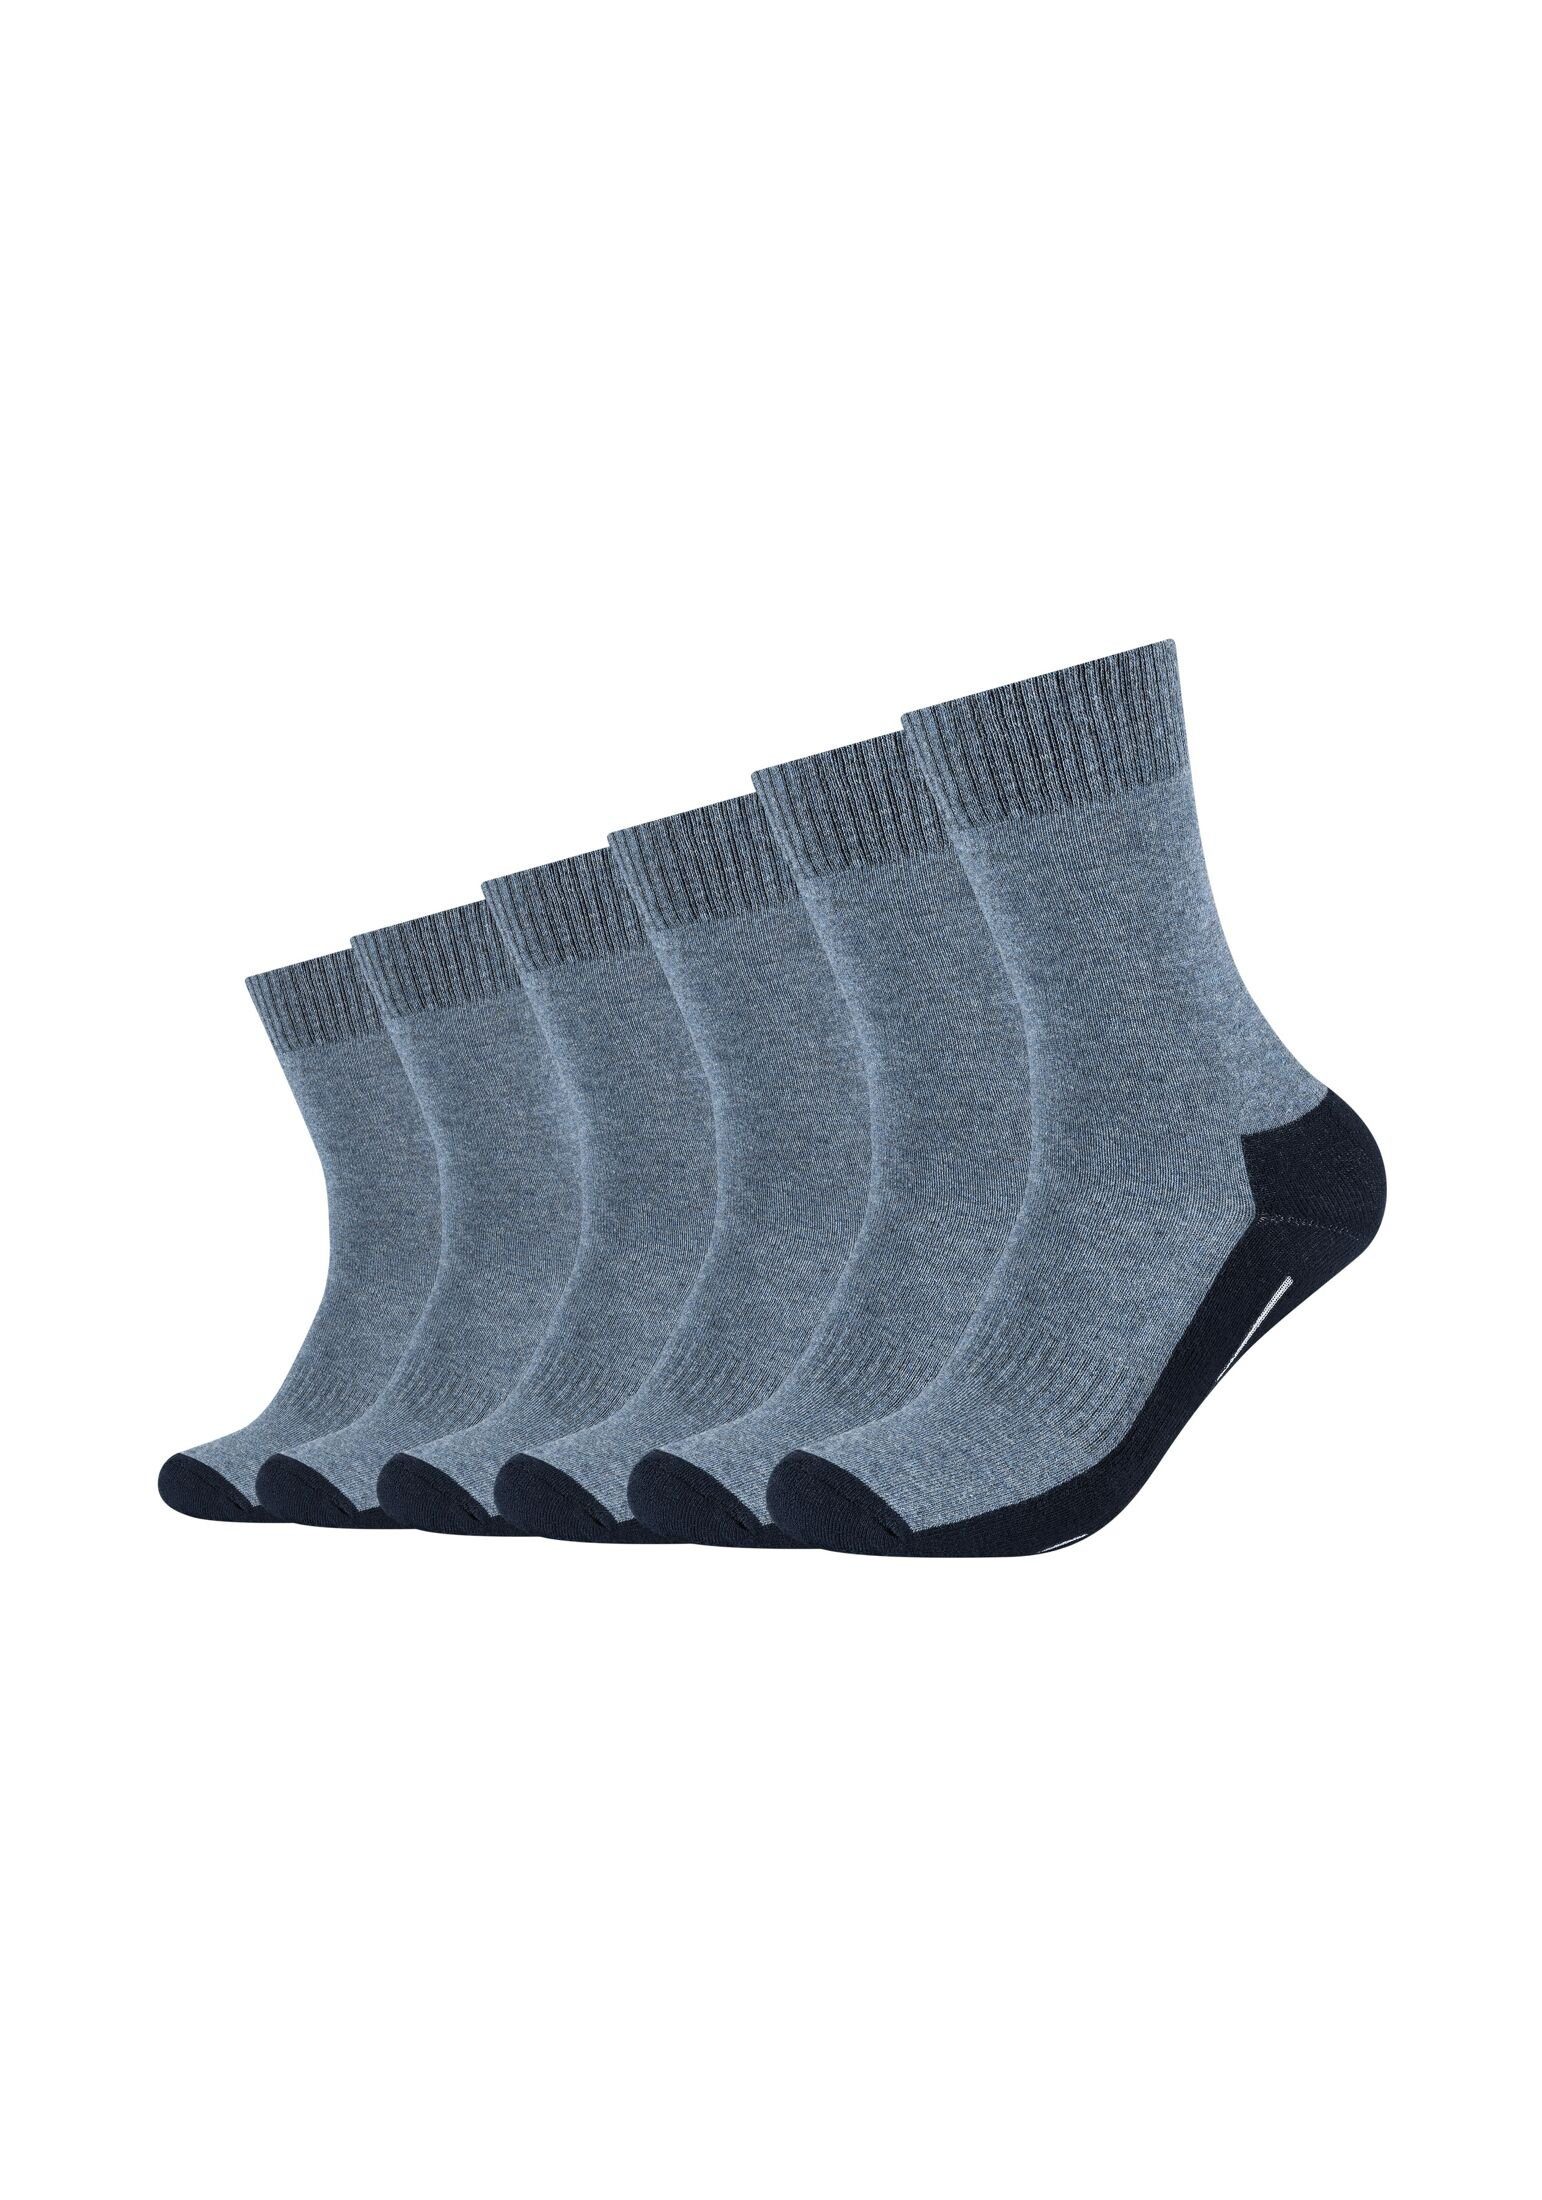 Camano Socken Socken 6er Pack navy